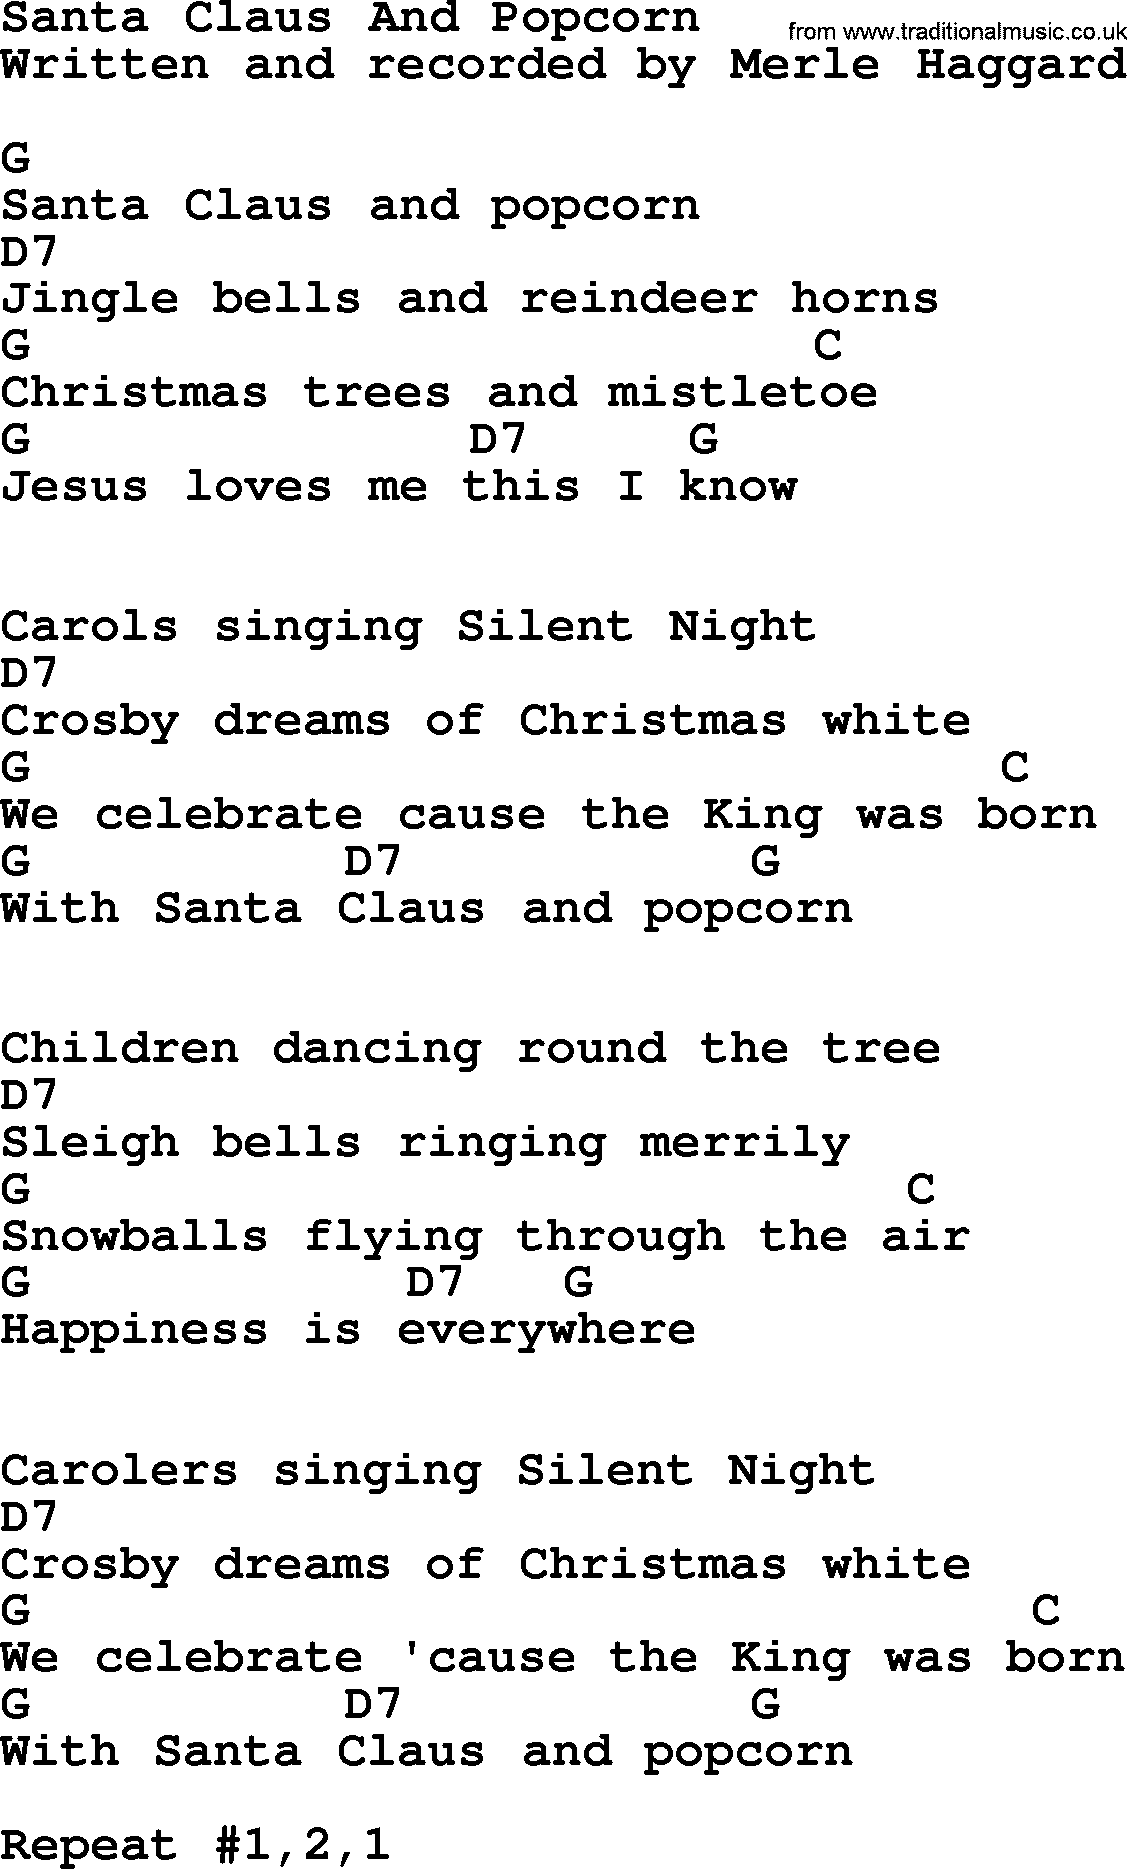 Merle Haggard song: Santa Claus And Popcorn, lyrics and chords